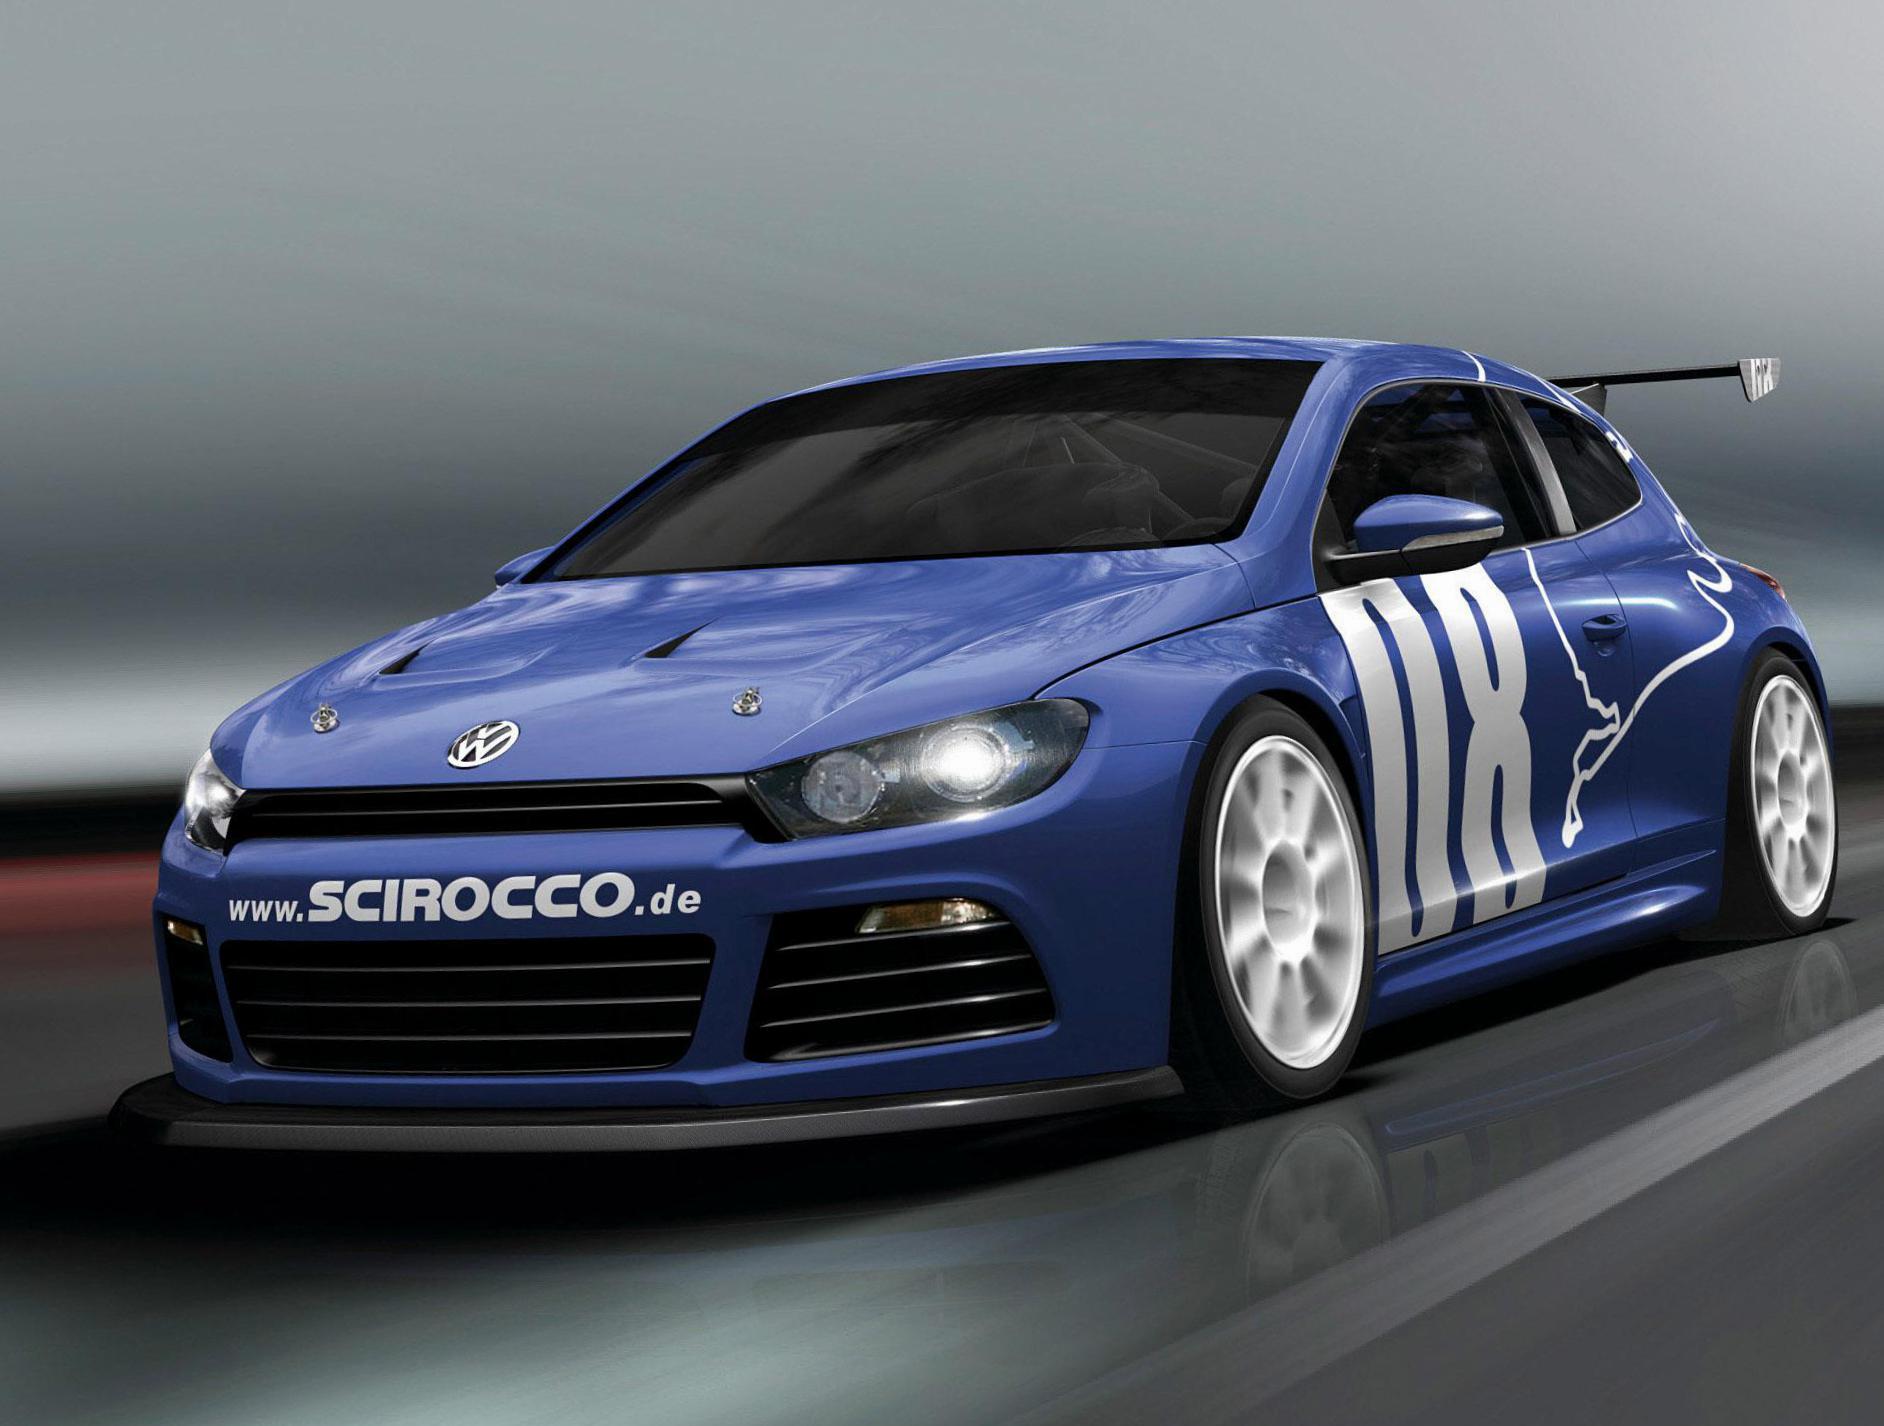 Scirocco Volkswagen review 2010